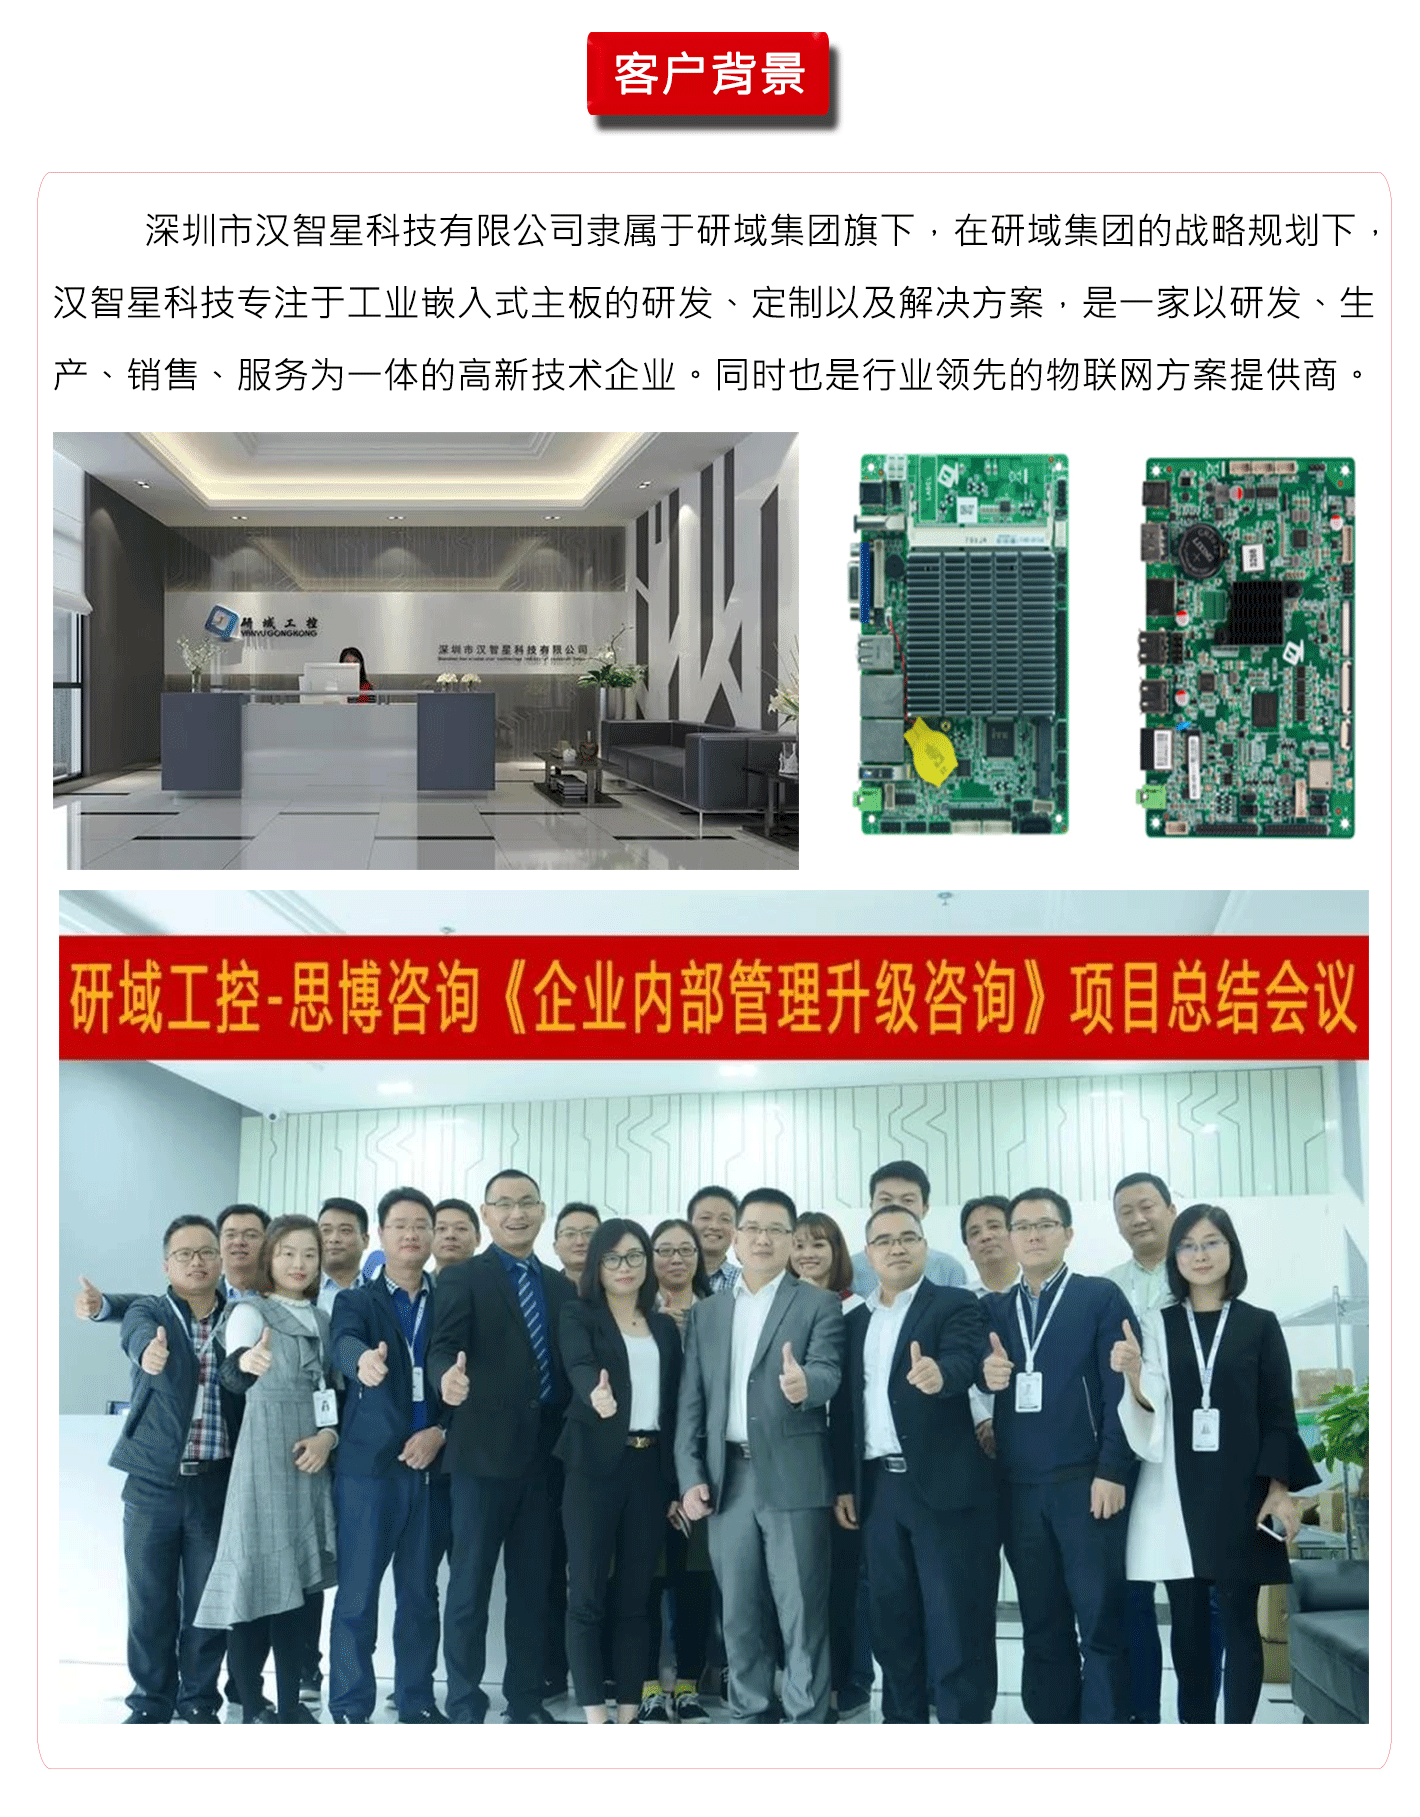 深圳市汉智星科技有限公司.png